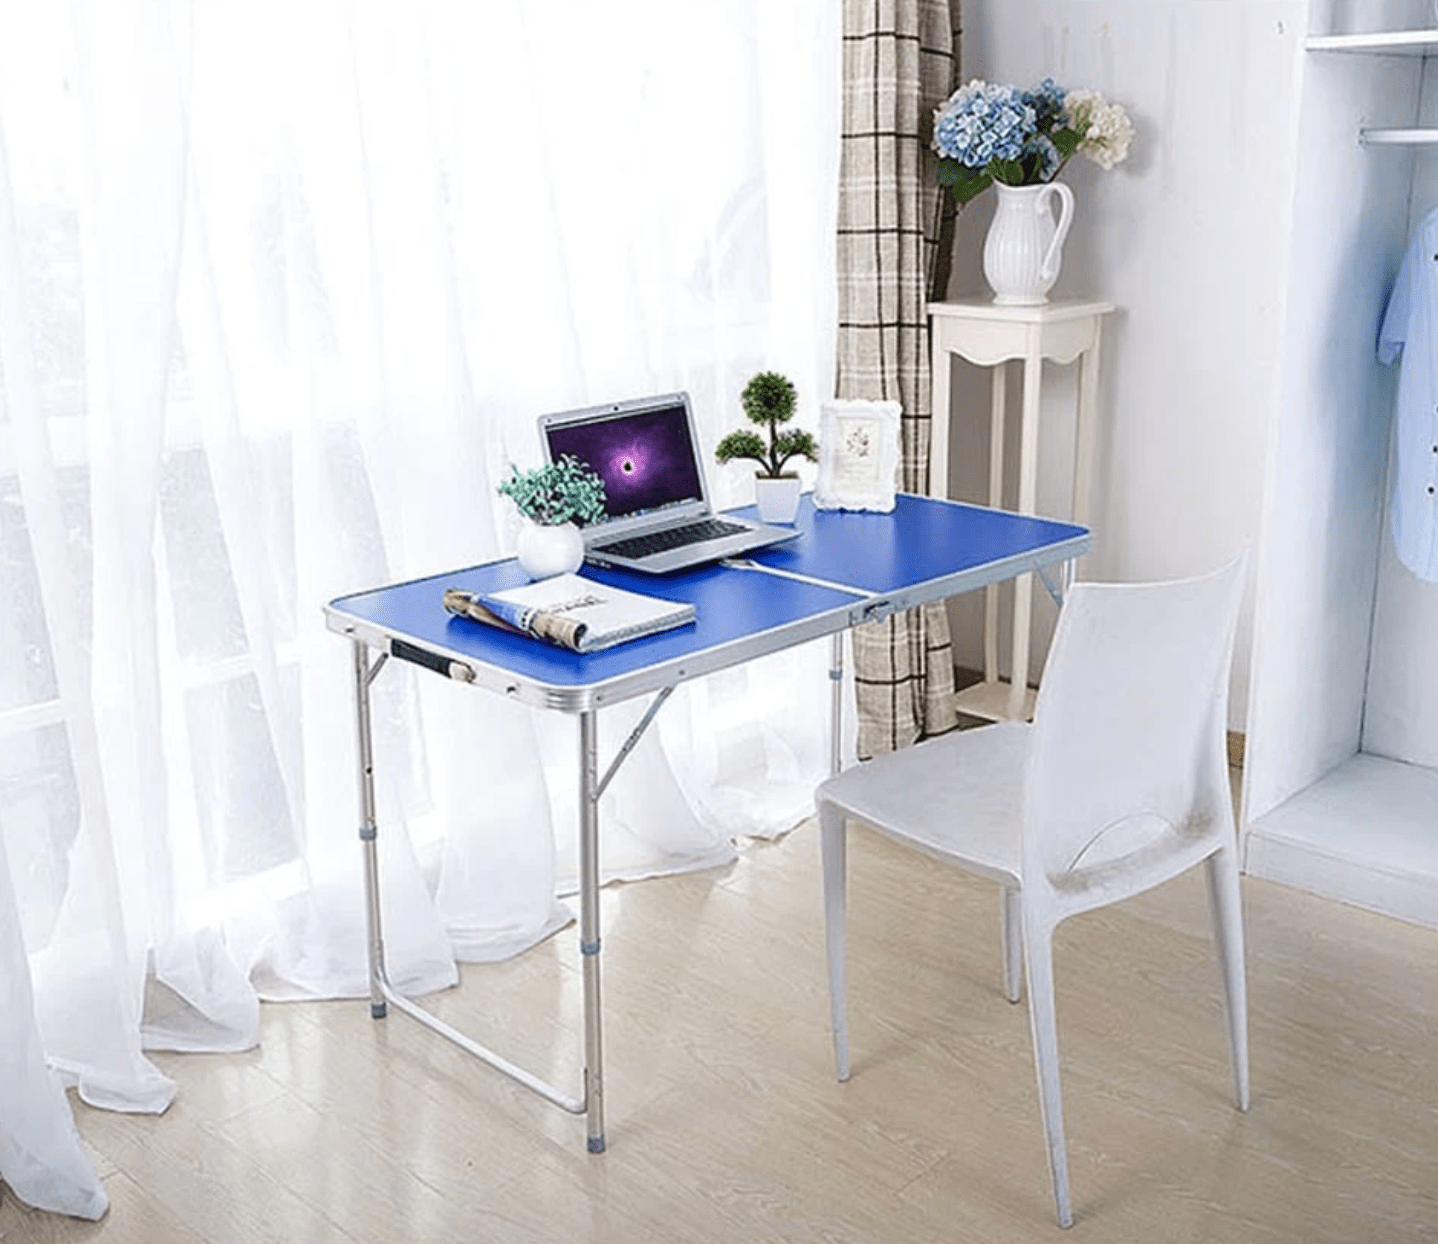 Jiji aluminium folding table